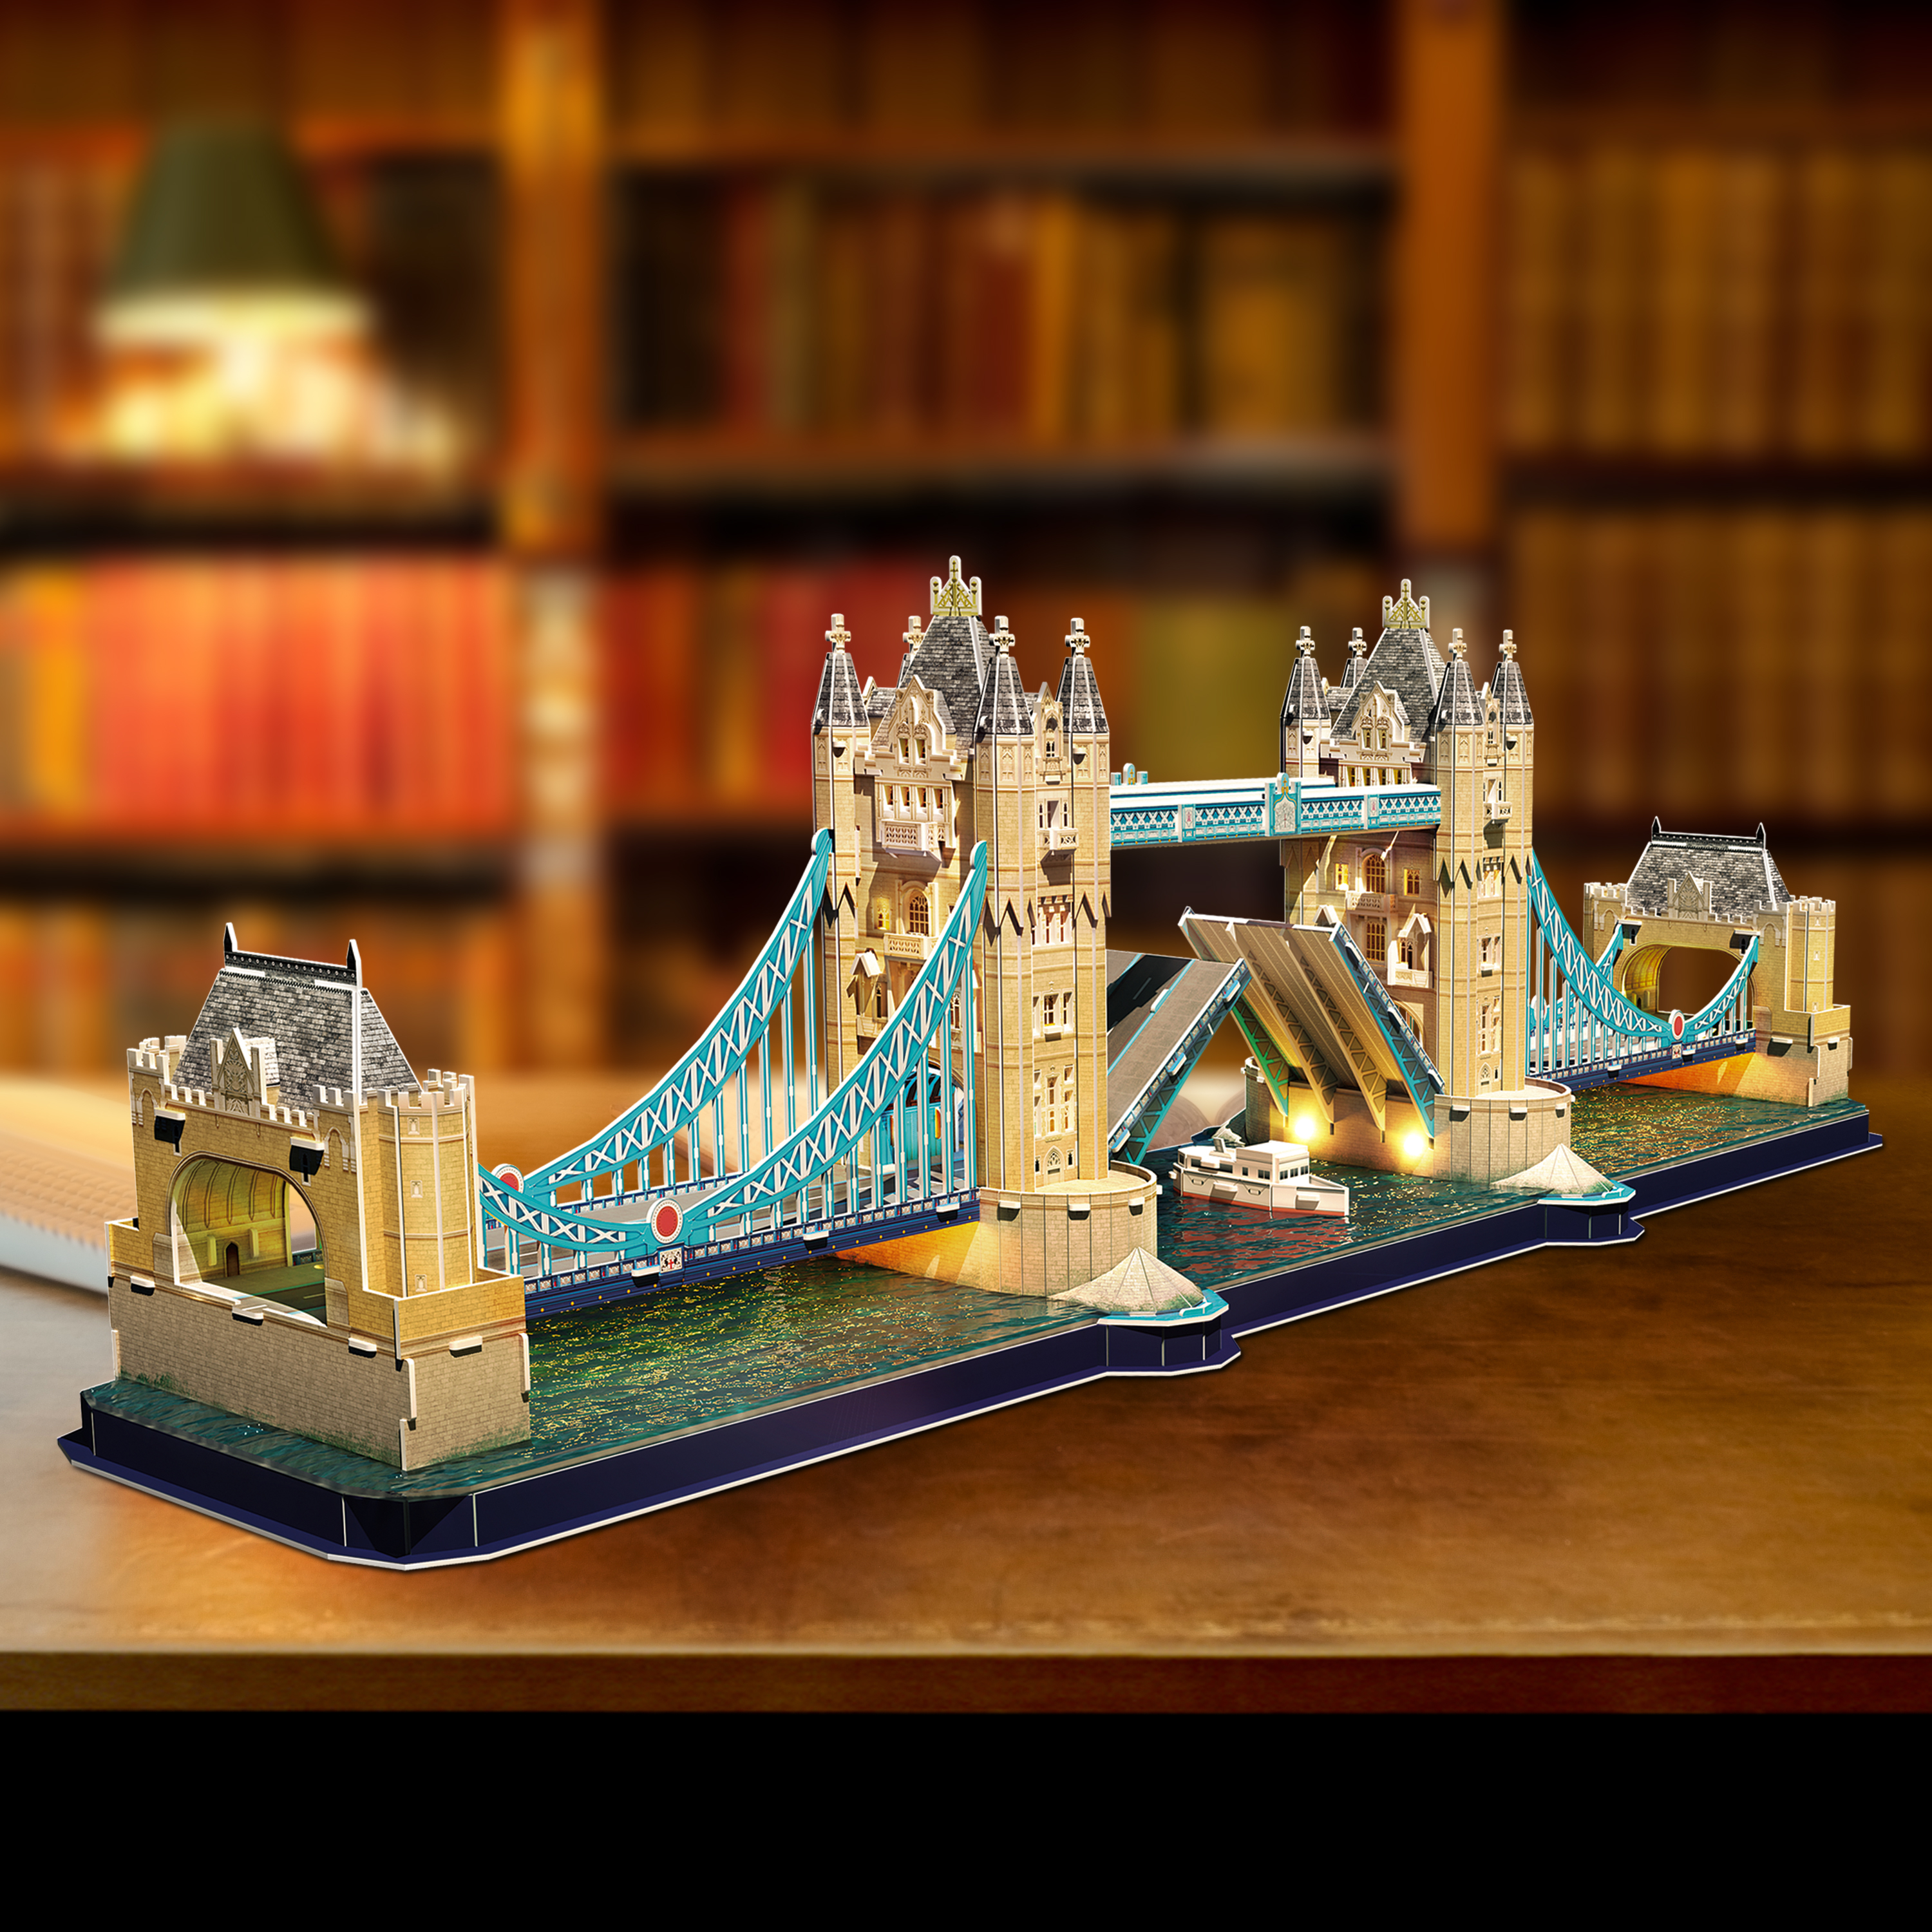 Puzzle 3D LED Tower Bridge - 222 pezzi - 3D Puzzle